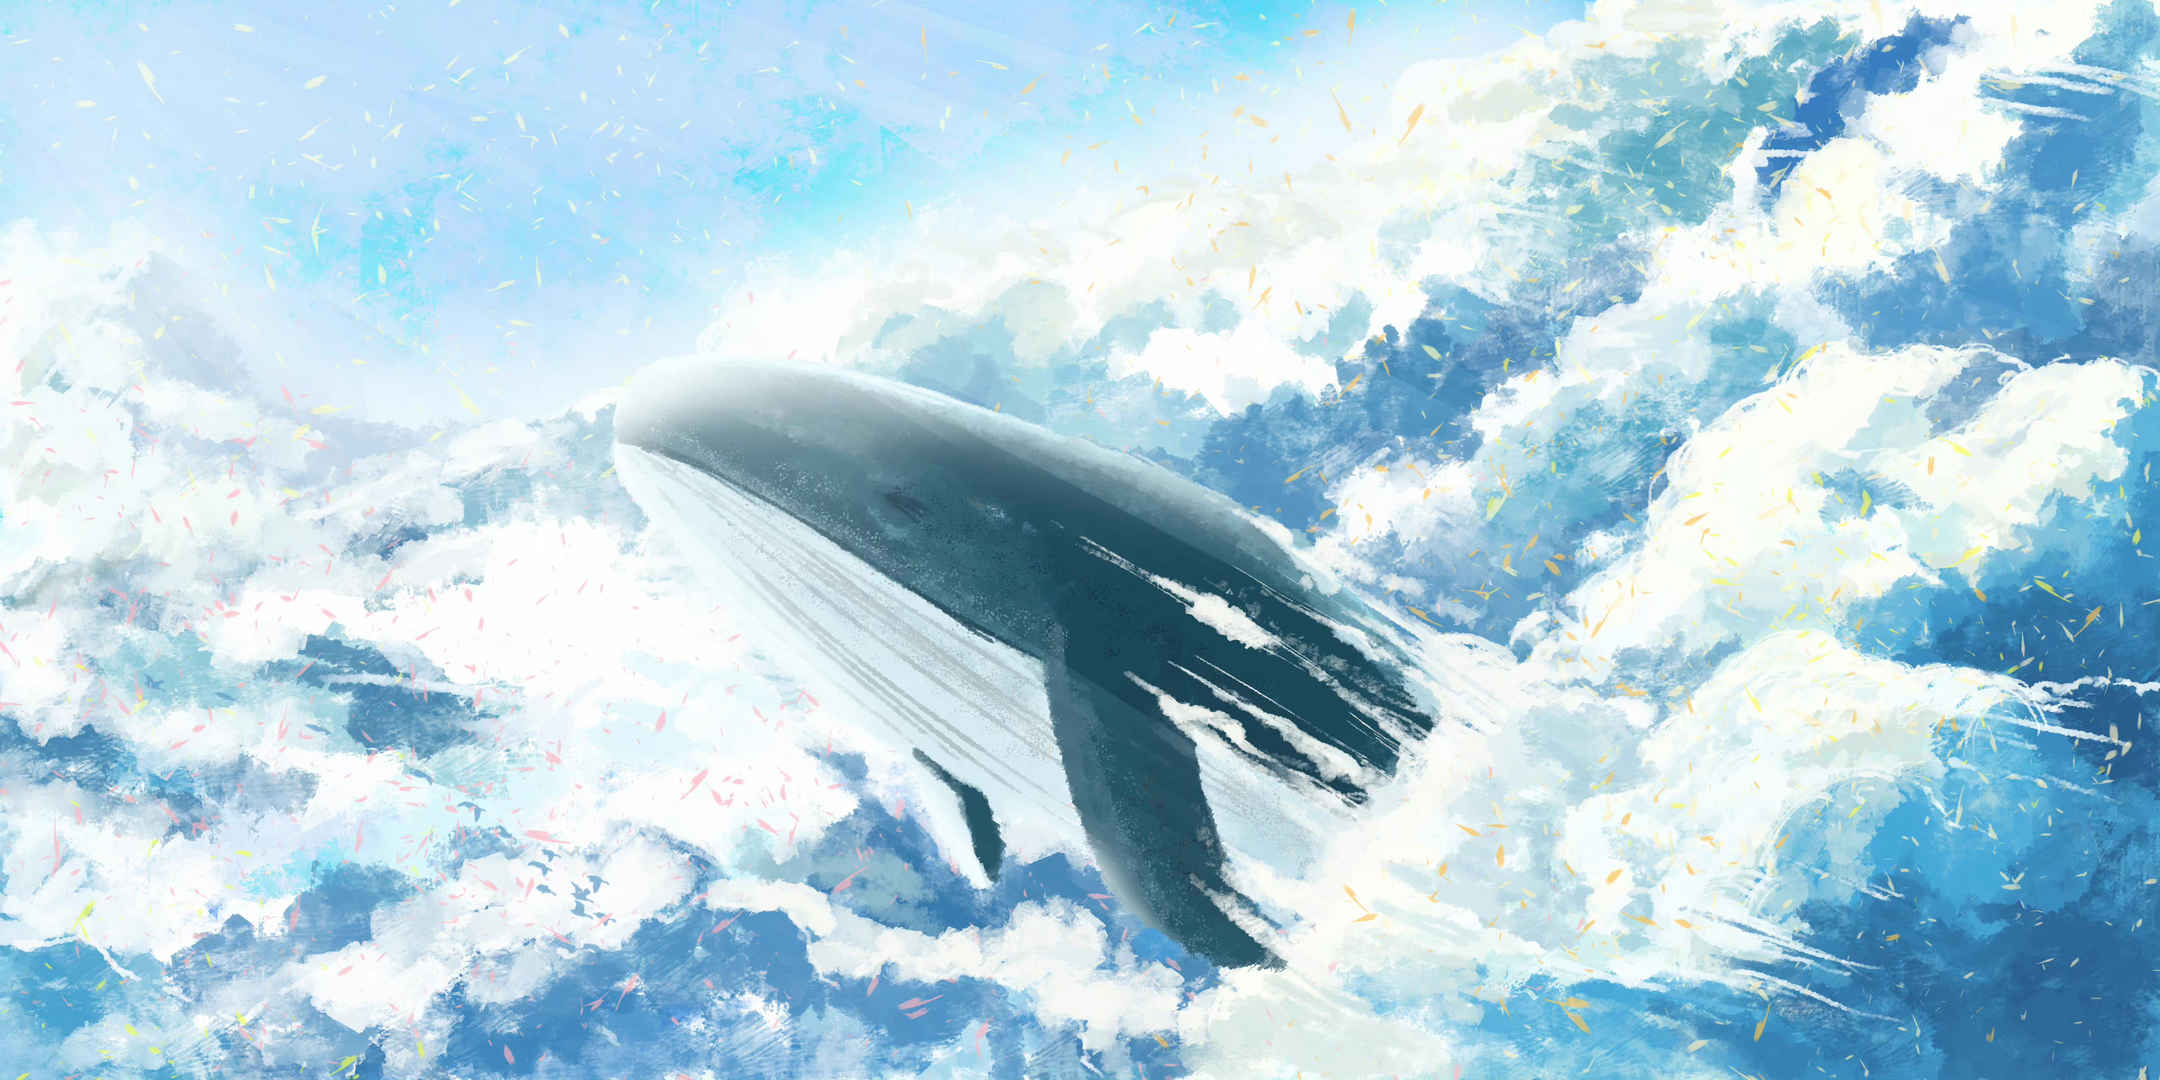 唯美梦幻手绘天空与鲸海报素材